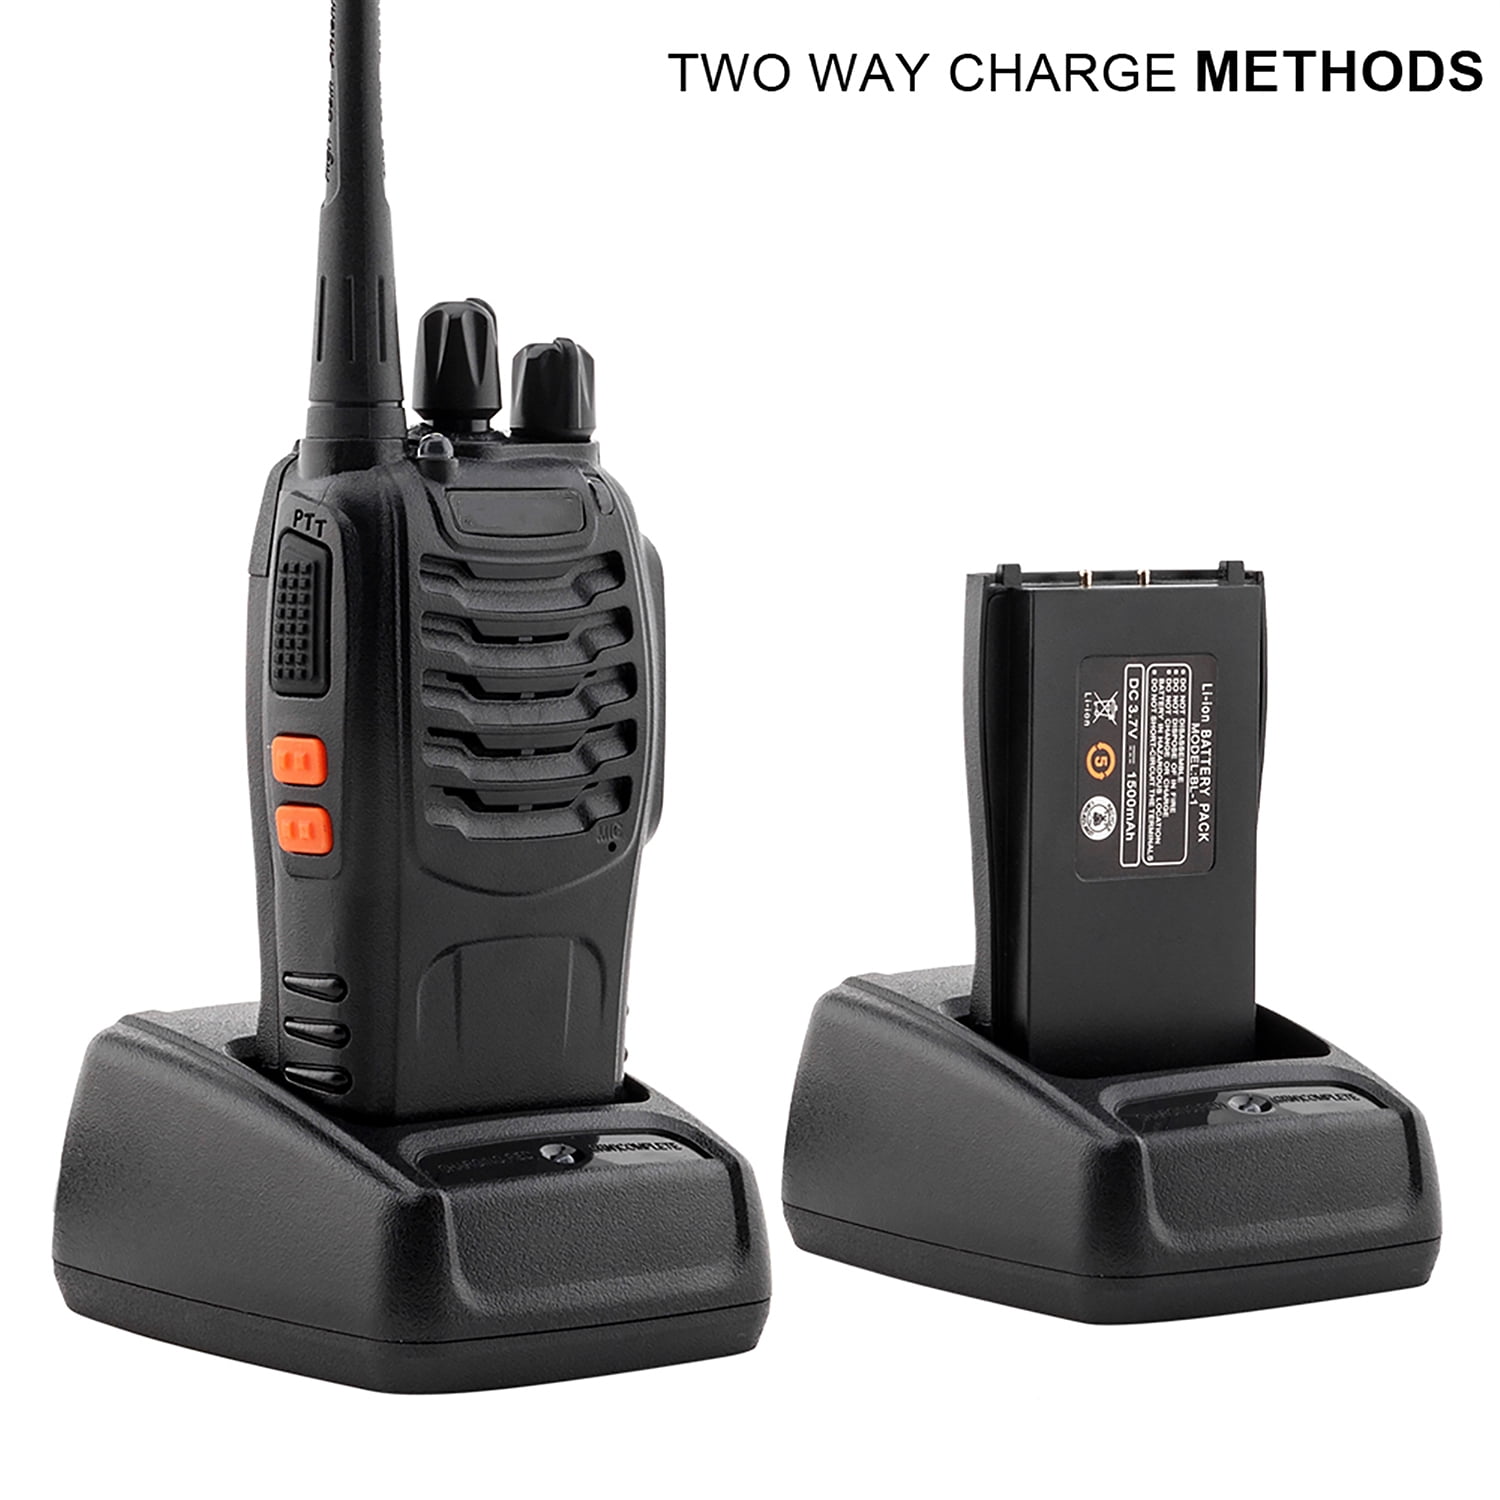 Handheld Walkie Talkies, 10KM Long Range 2-Way Radio 16-Channel with  Earphones Black (2Pcs/Pair)